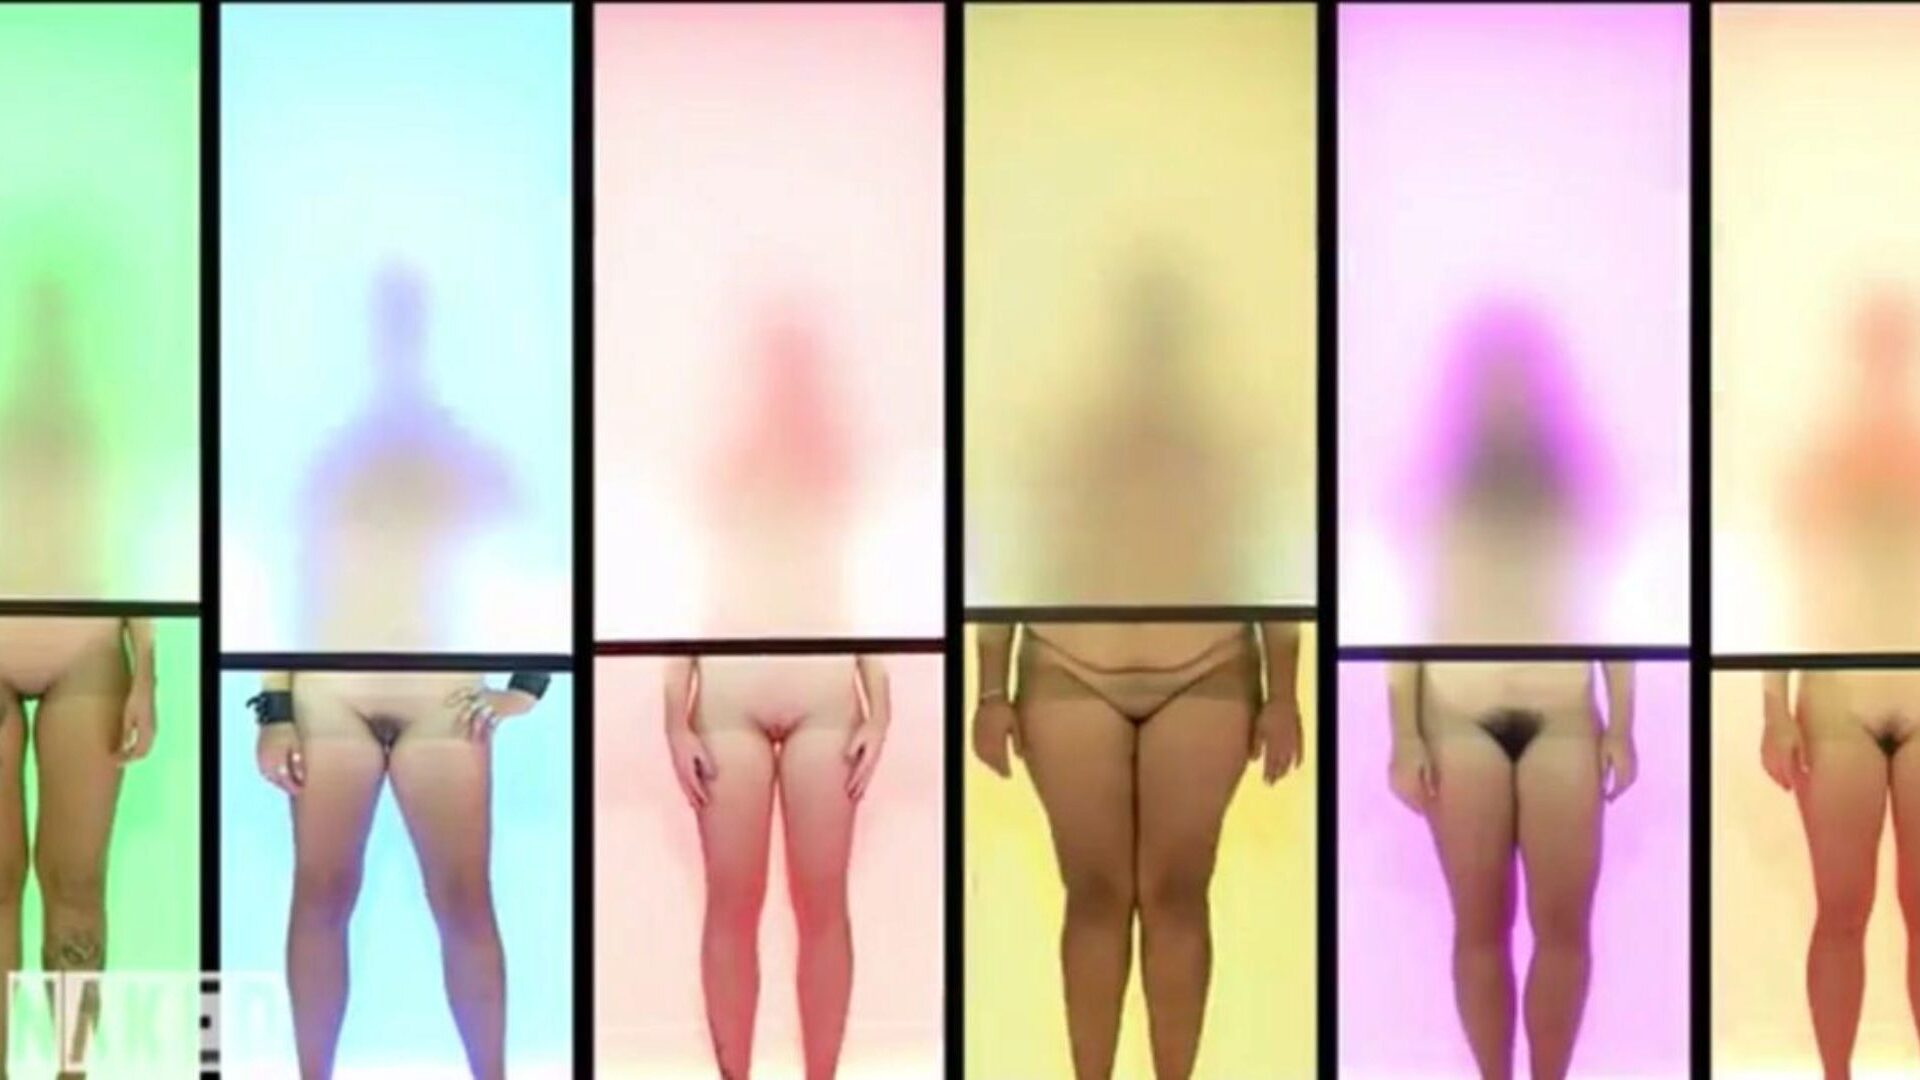 alaston vetovoima saksalainen versio leike 7, porno c3: xhamster katsella alaston vetovoima saksalainen versio leike 7 elokuva xhamster, erinomainen hd fuckfest putki sivusto tonnia ilmaisia ​​saksalaisia ​​alasti saksa & alaston porno leikkeet